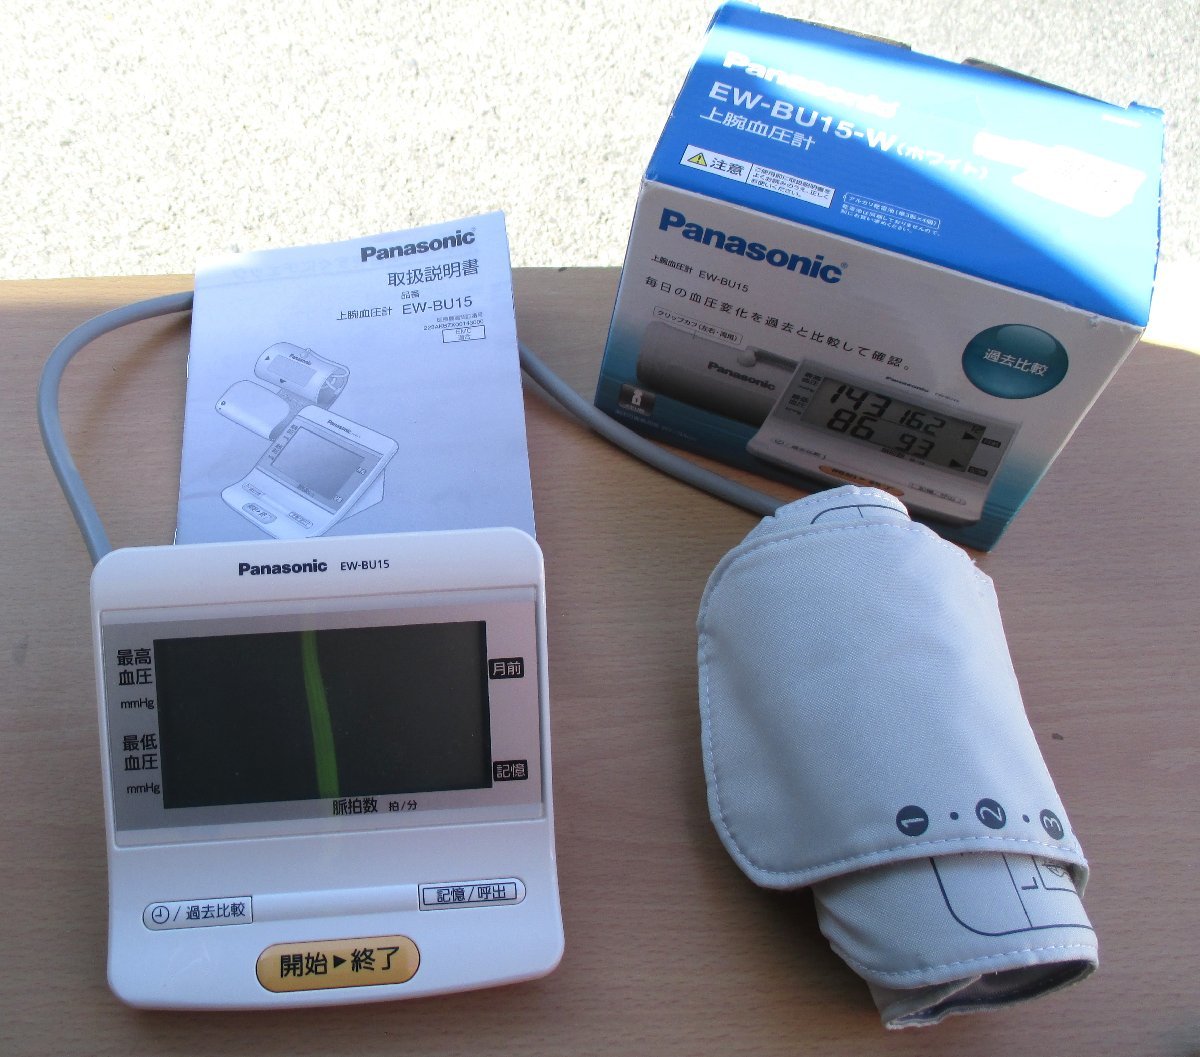 ☆パナソニック Panasonic EW-BU15 上腕血圧計◆毎日の健康管理に991円_画像1